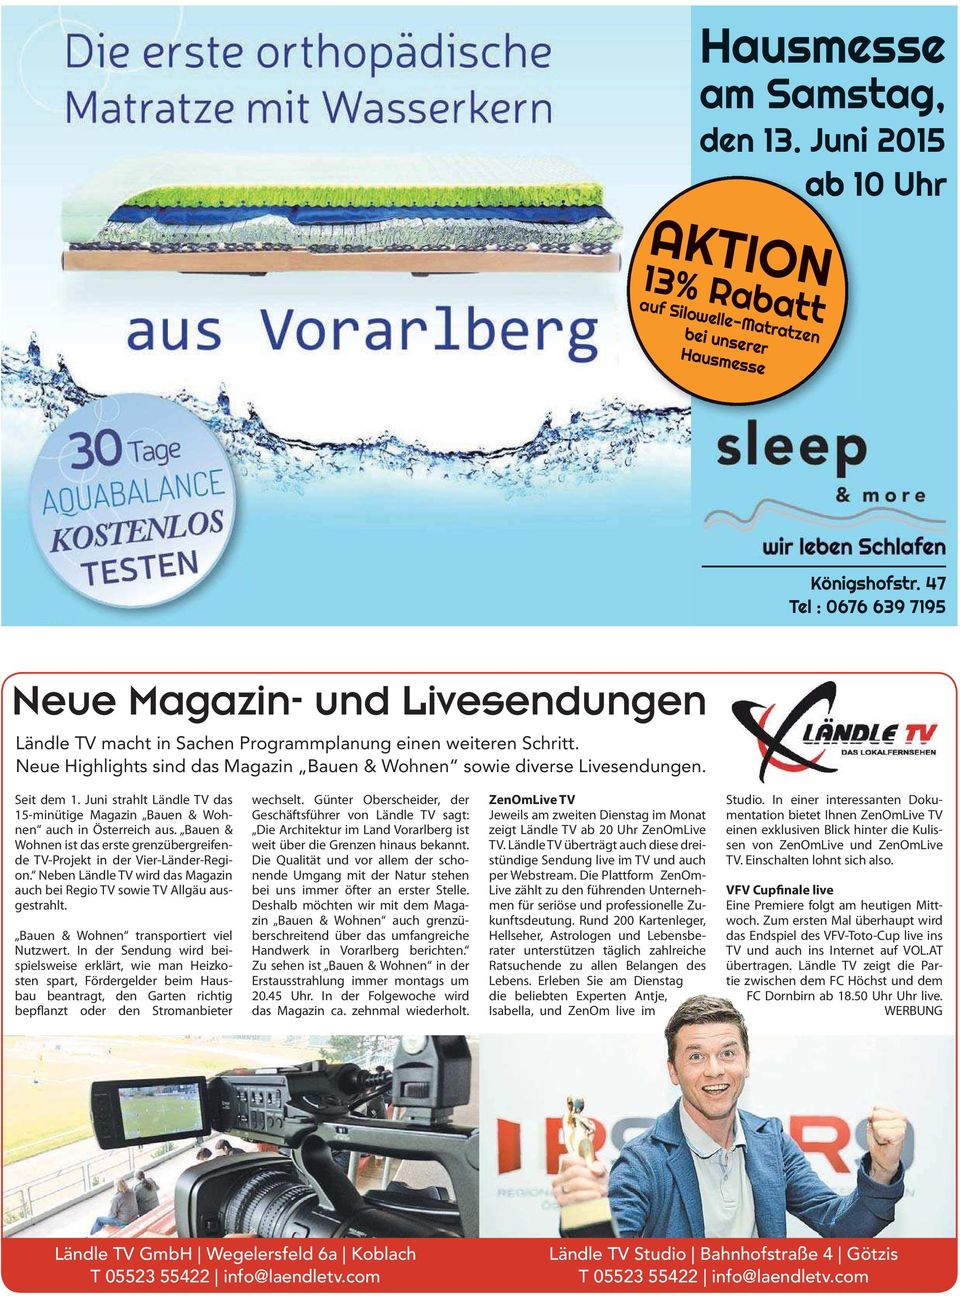 Seit dem 1. Juni strahlt Ländle TV das 15-minütige Magazin Bauen & Wohnen auch in Österreich aus. Bauen & Wohnen ist das erste grenzübergreifende TV-Projekt in der Vier-Länder-Region.